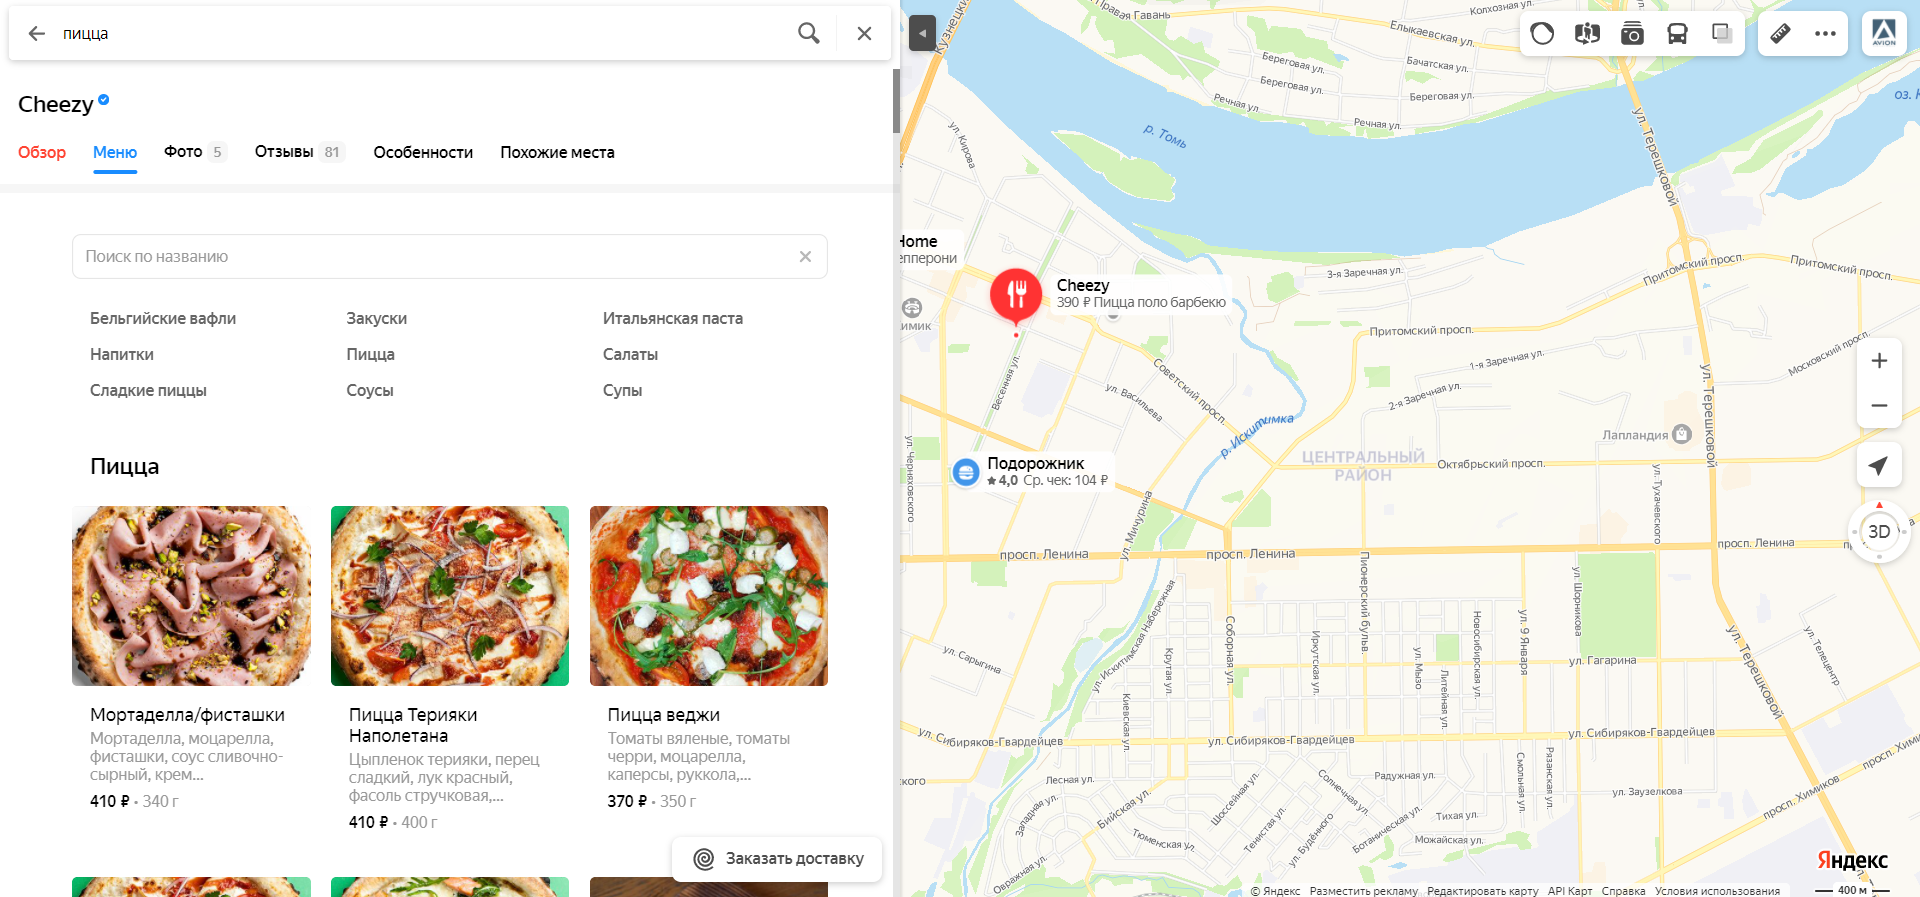 Пример оформления меню в «Яндекс.Карты»